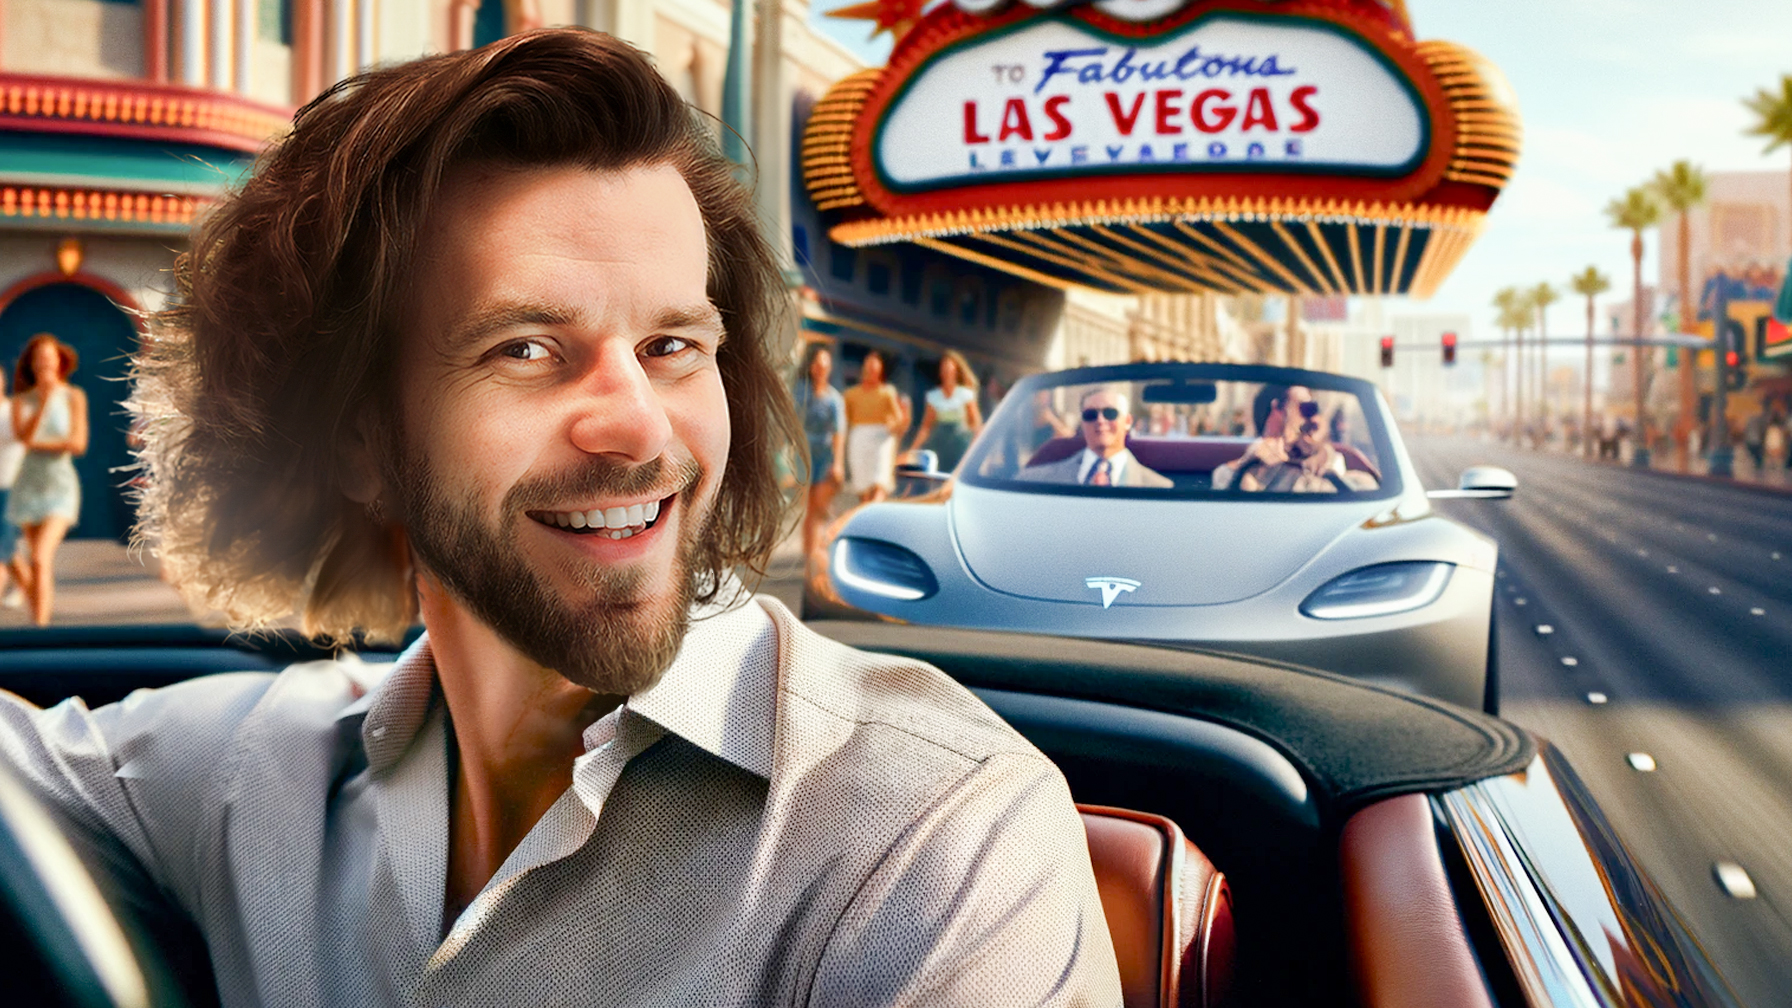 Zdjęcie uśmiechniętego mężczyzny z bujną brązową brodą i włosami, siedzącego za kierownicą kabrioletu. Na tle widać charakterystyczny znak "Welcome to Fabulous Las Vegas" oraz barwną ulicę Vegas z ludźmi i innymi kabrioletami; w tym jeden z logo Tesli i czerwoną strzałką symbolizującą ruch w prawo.